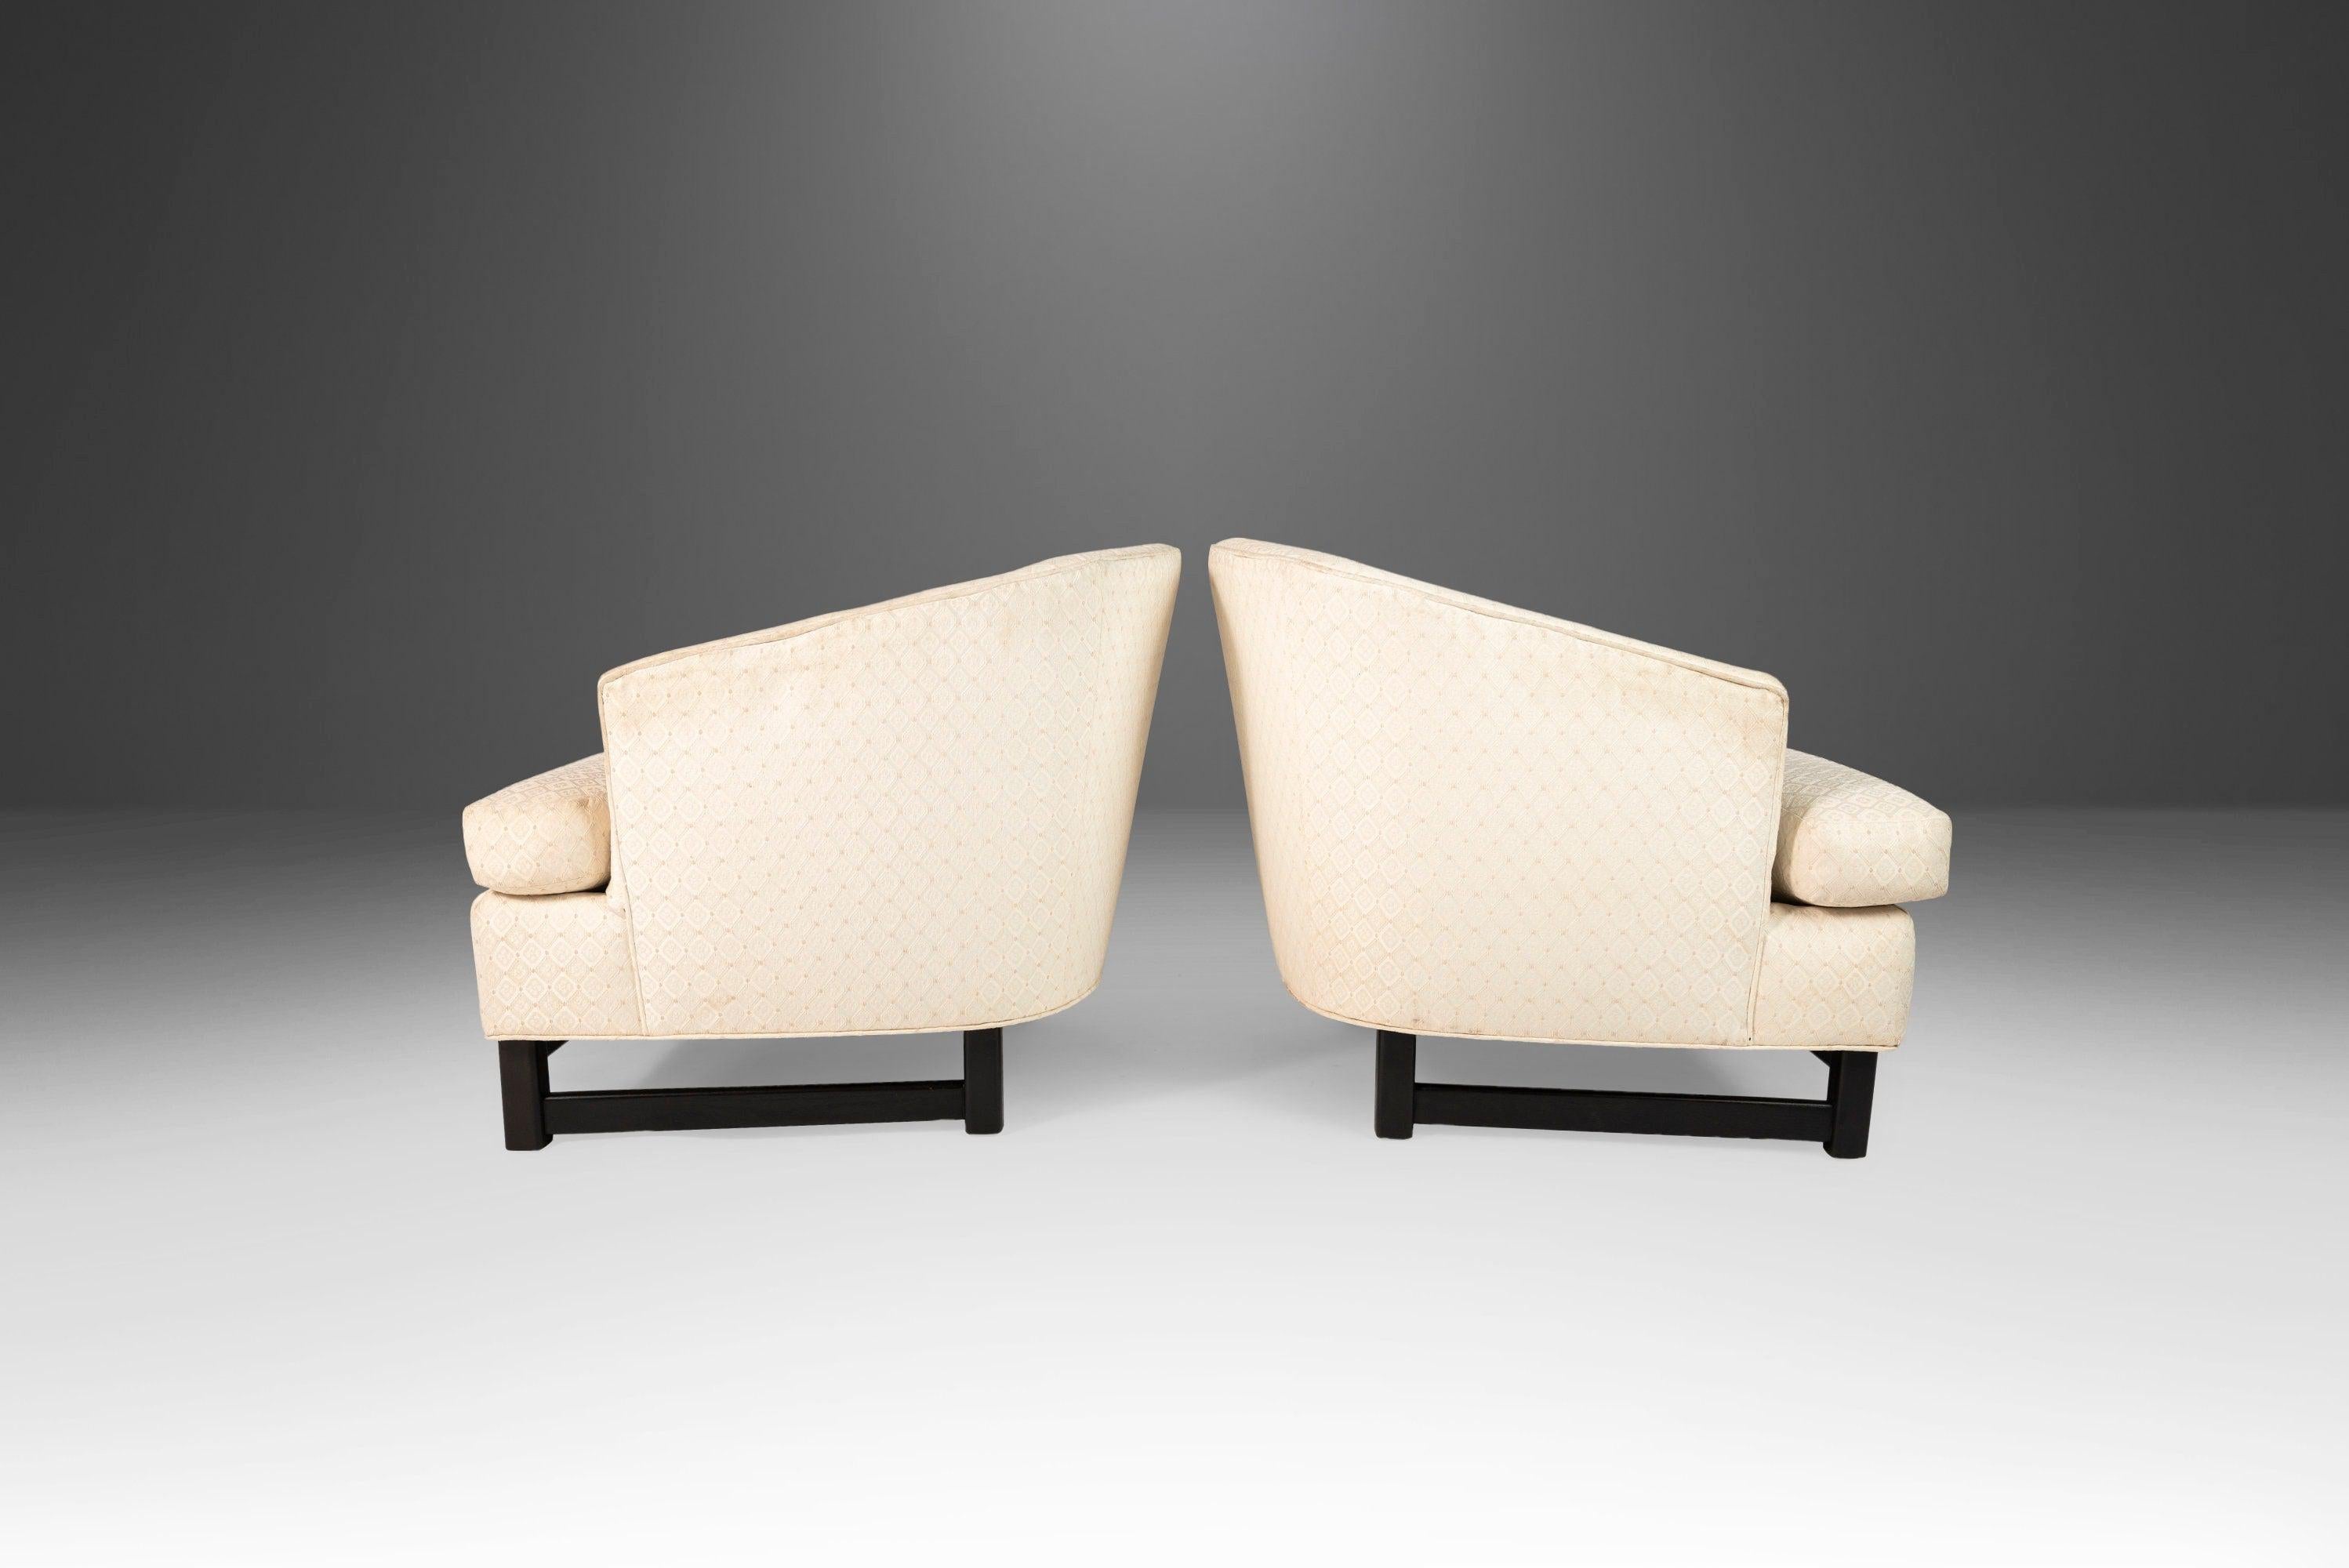 Attention aux designers ! Cet ensemble de fauteuils, d'après Edward Wormley pour Dunbar, est aussi élégant que confortable. La tapisserie d'origine montre des signes d'usure, ce qui fait de cet ensemble un candidat idéal pour un nouveau rembourrage